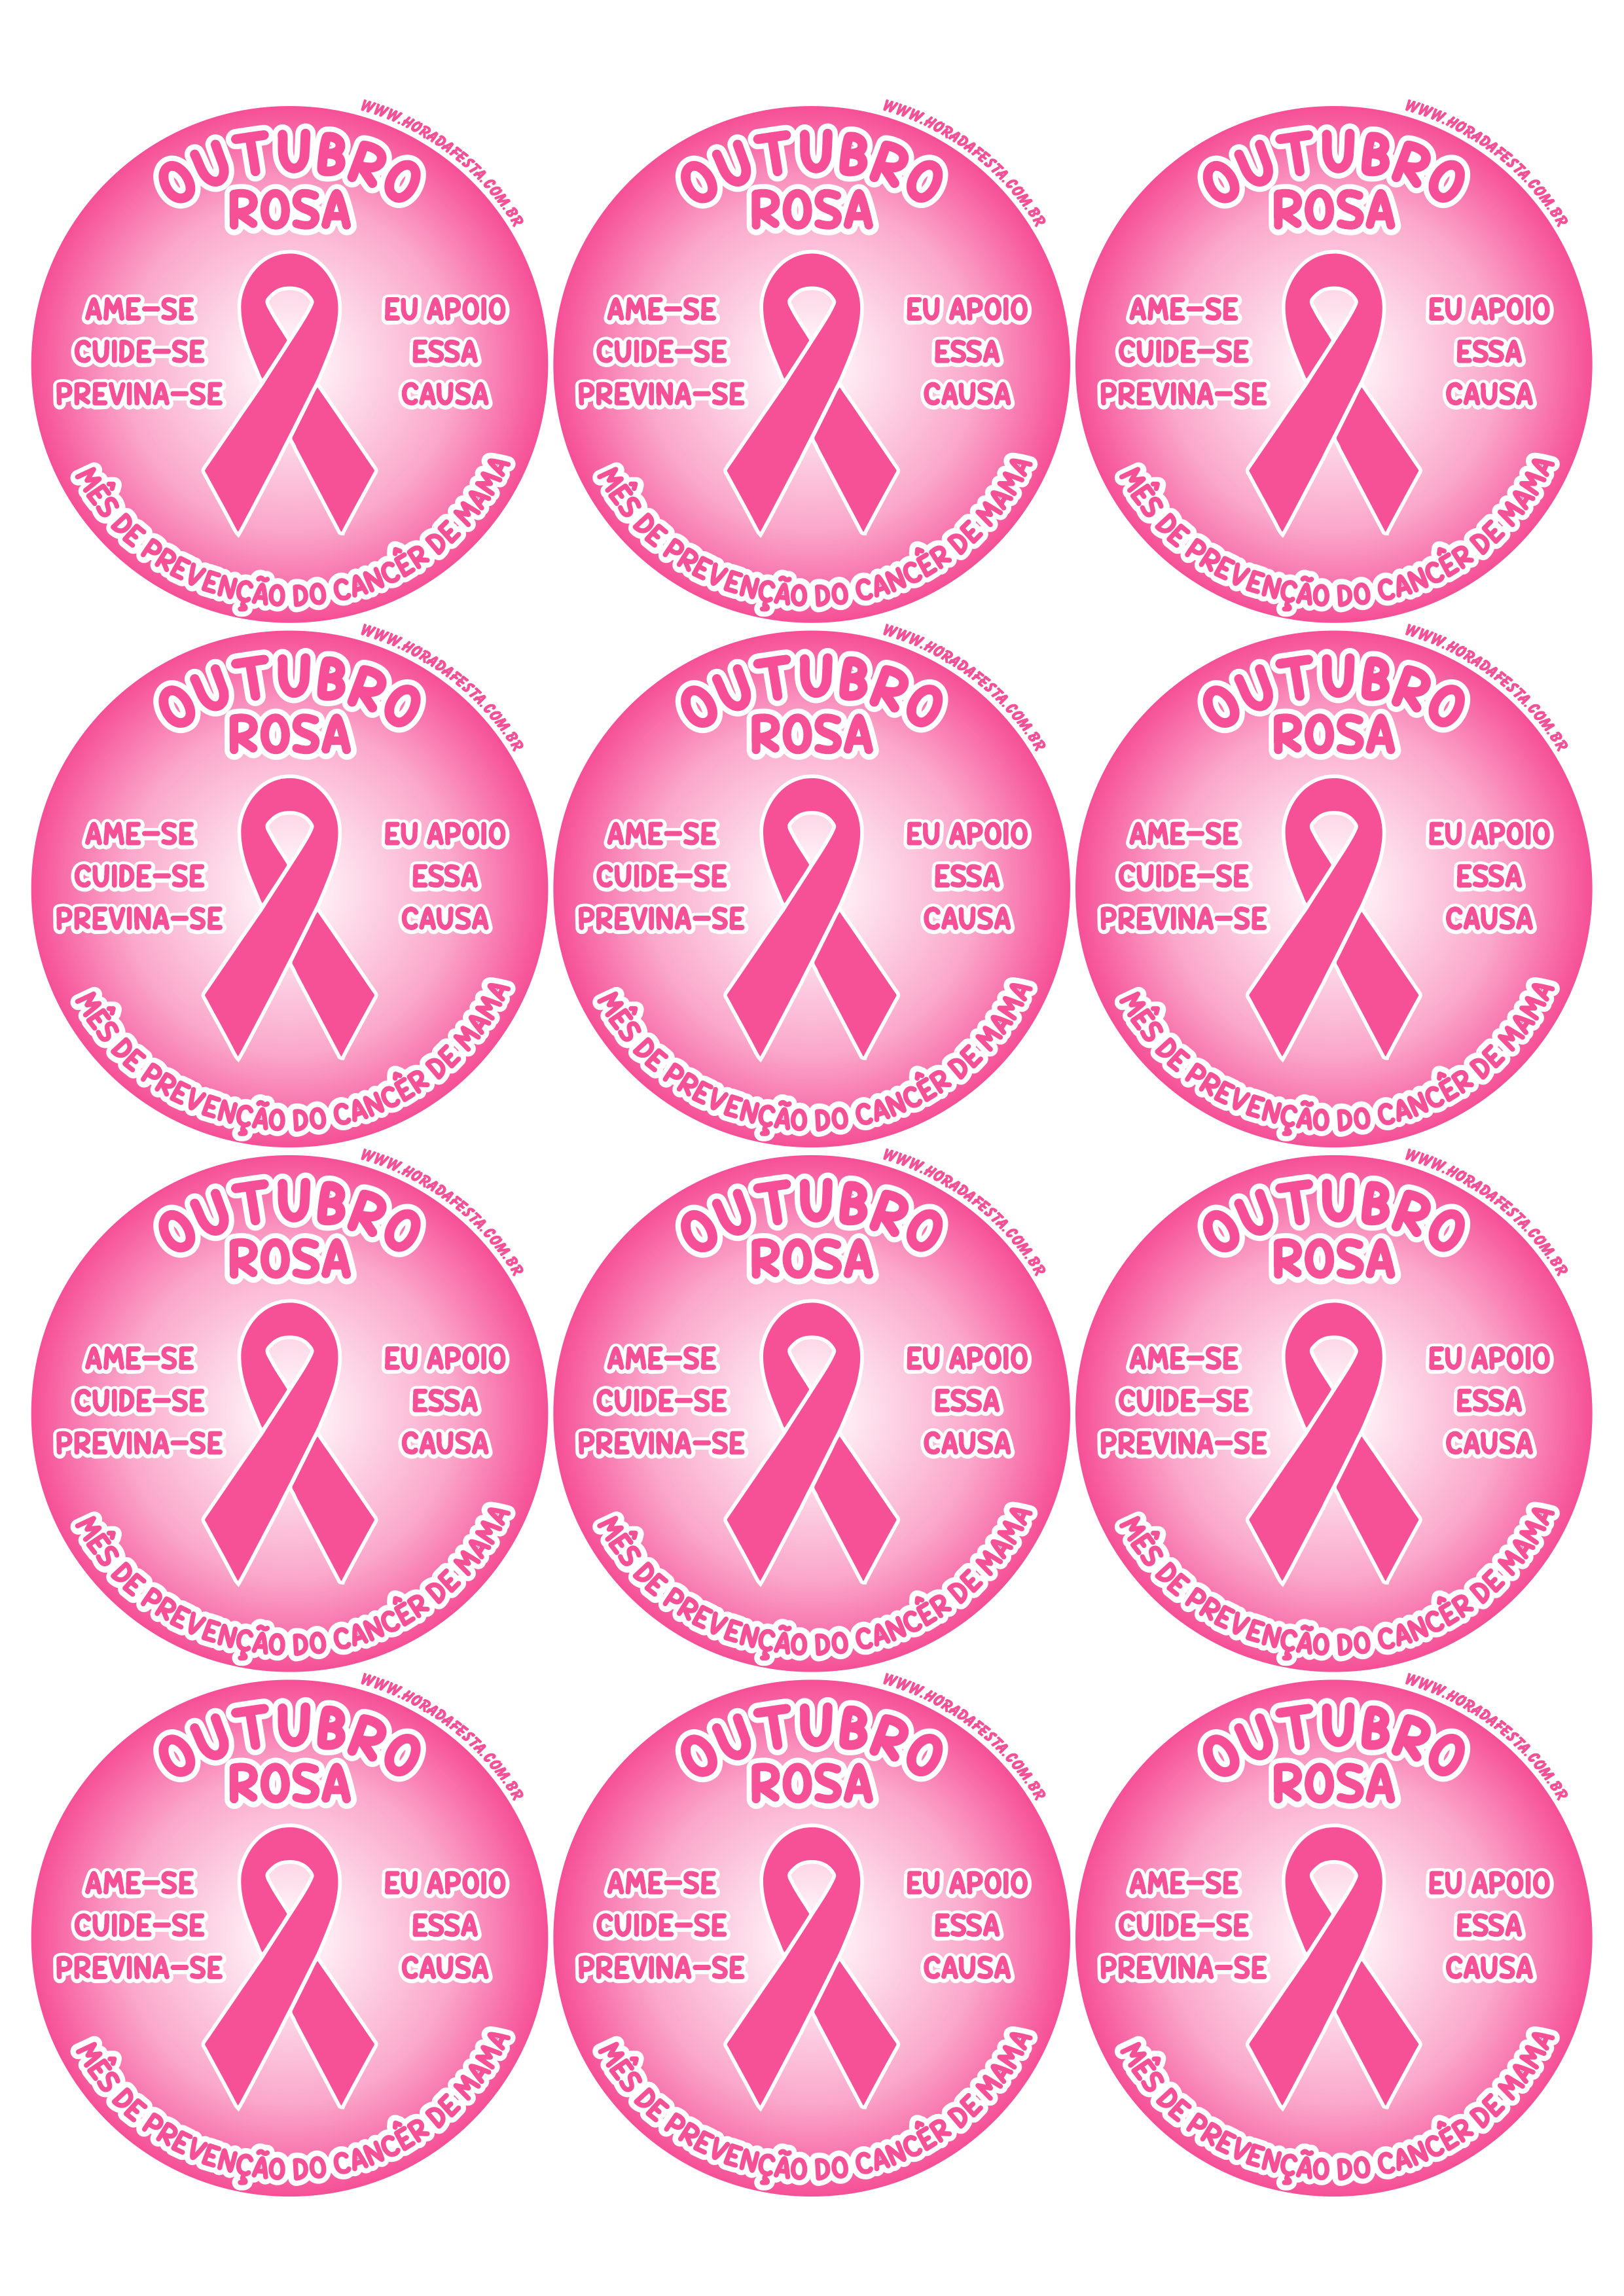 Outubro rosa mês de prevenção do câncer de mama ame-se cuide-se previna-se eu apoio essa causa adesivo redondo tag sticker 12 imagens png